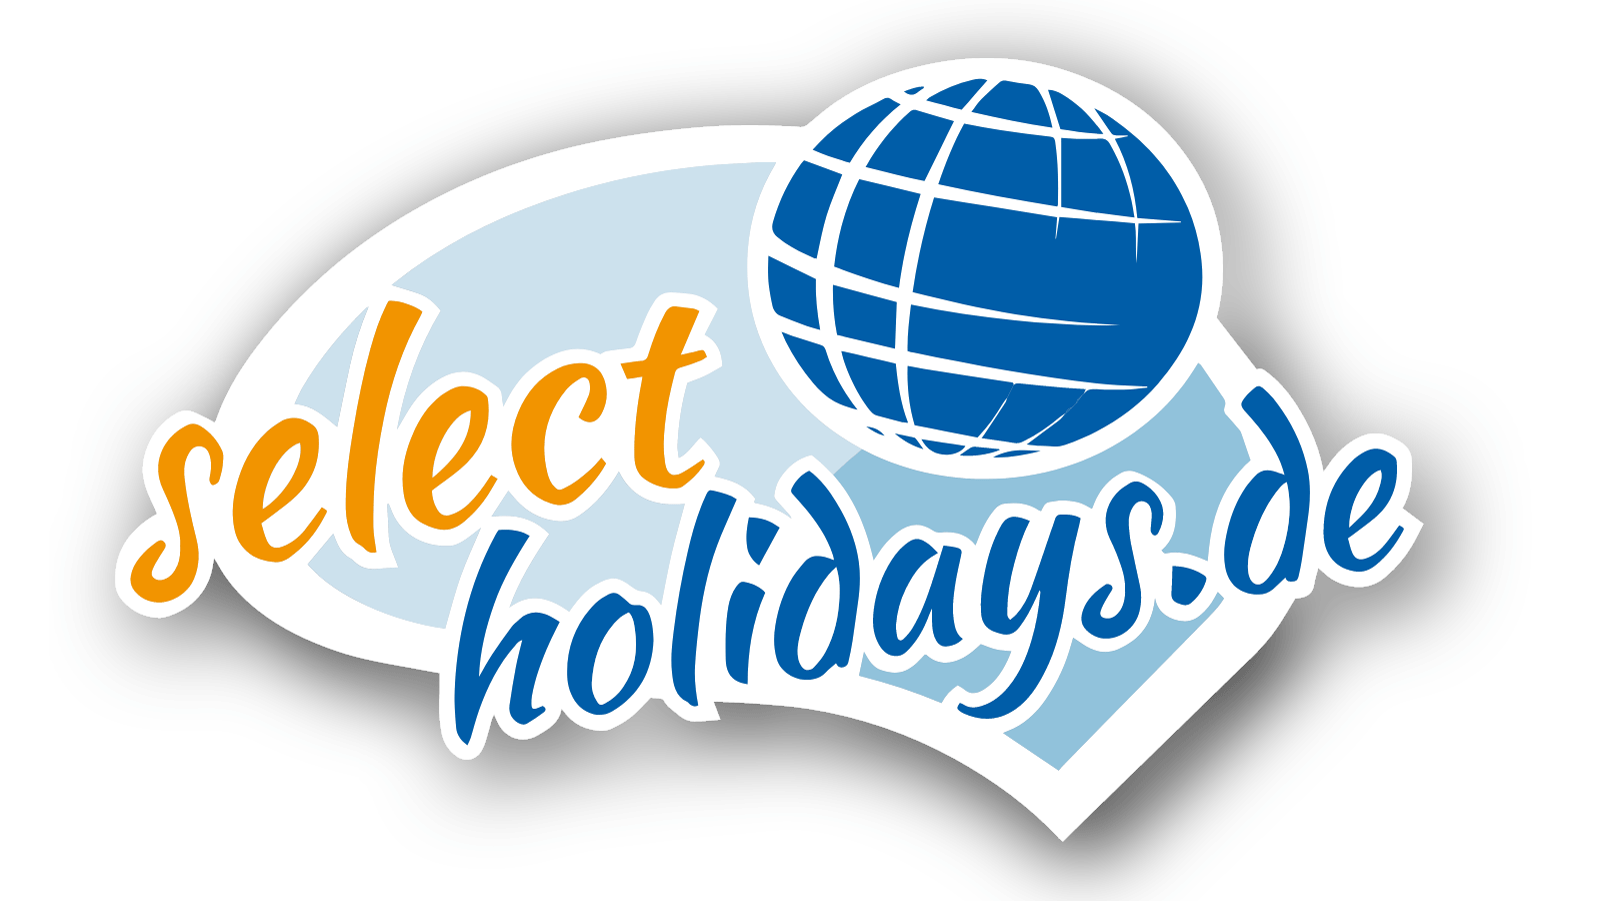 Select Holidays Gutschein